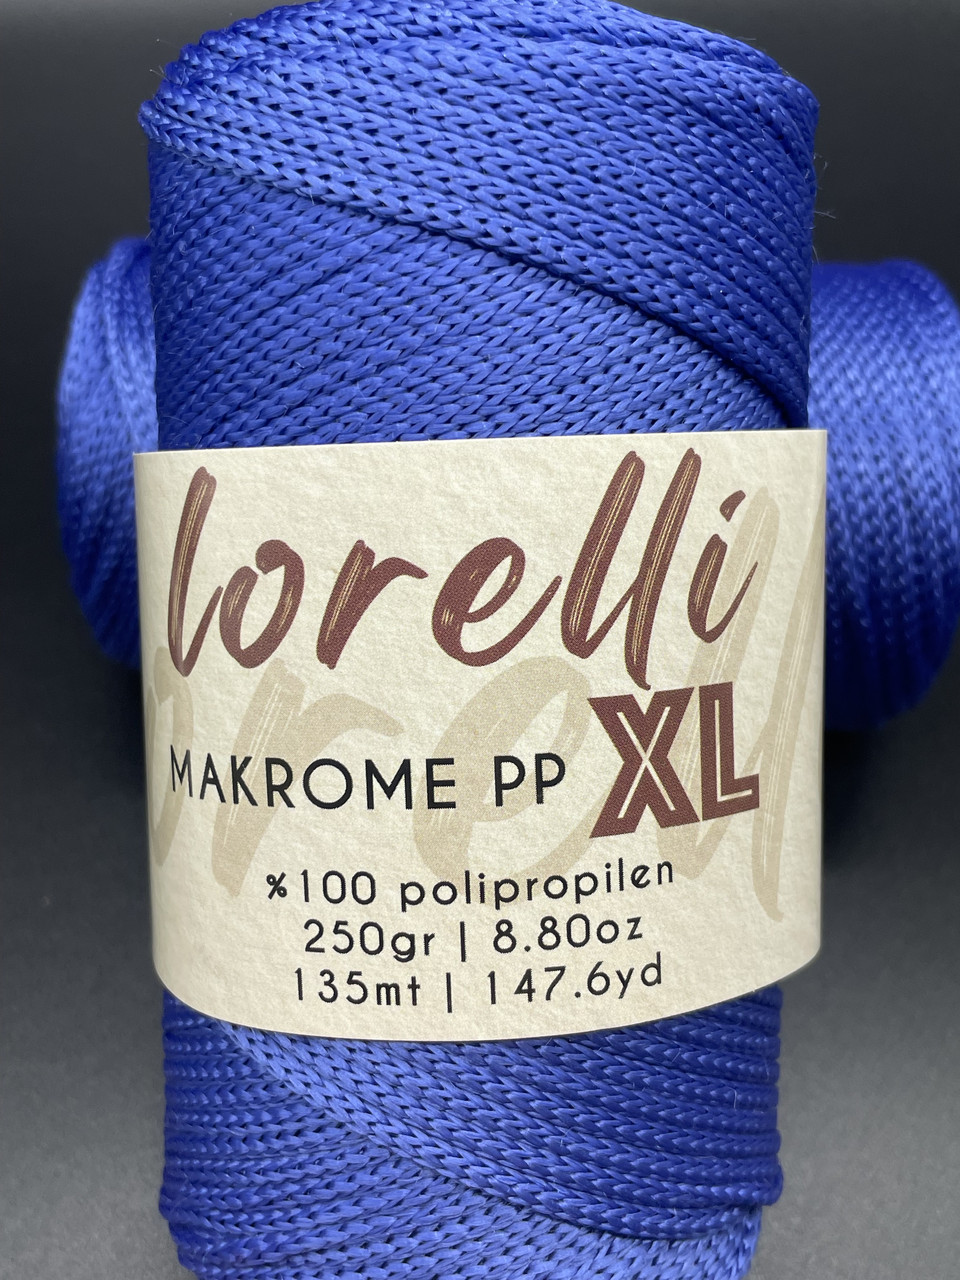 Makrome PP XL Lorelli-252